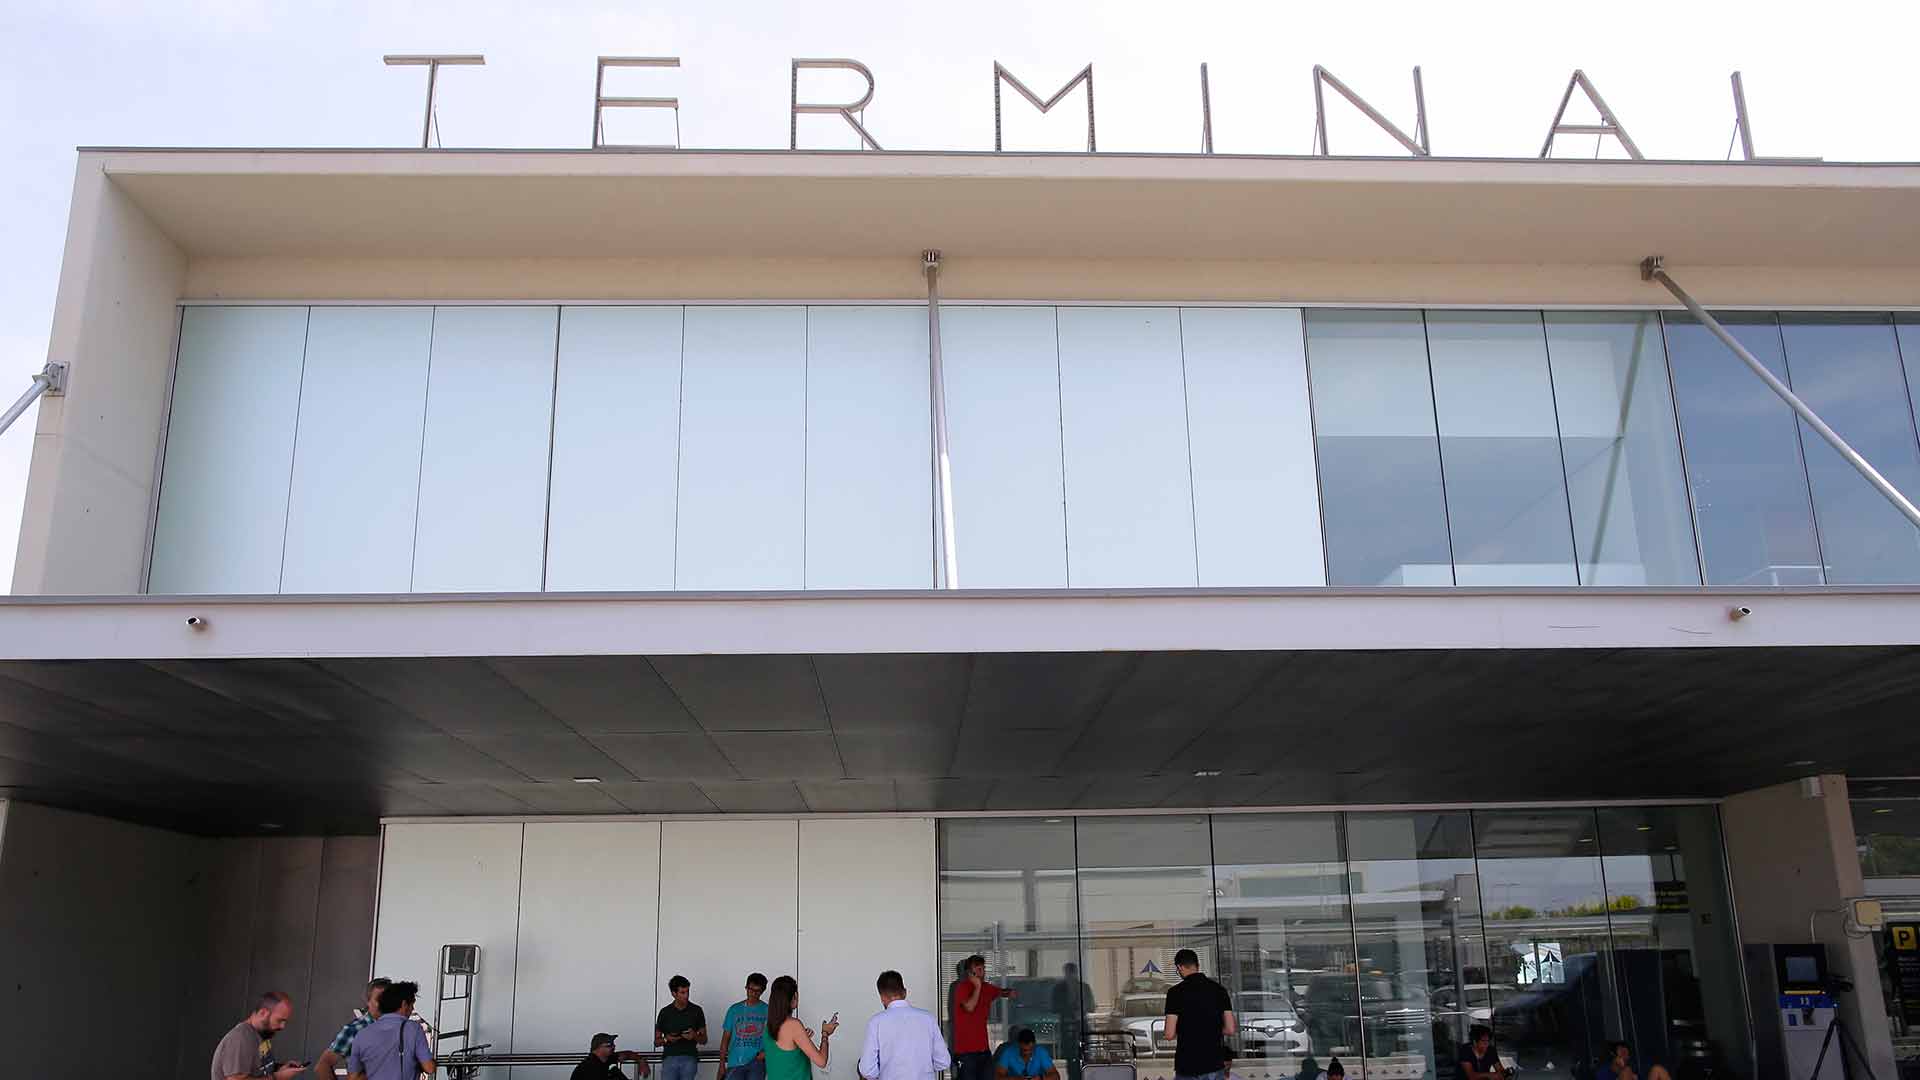 El aeropuerto de El Prat de Barcelona pasará a llamarse Josep Tarradellas